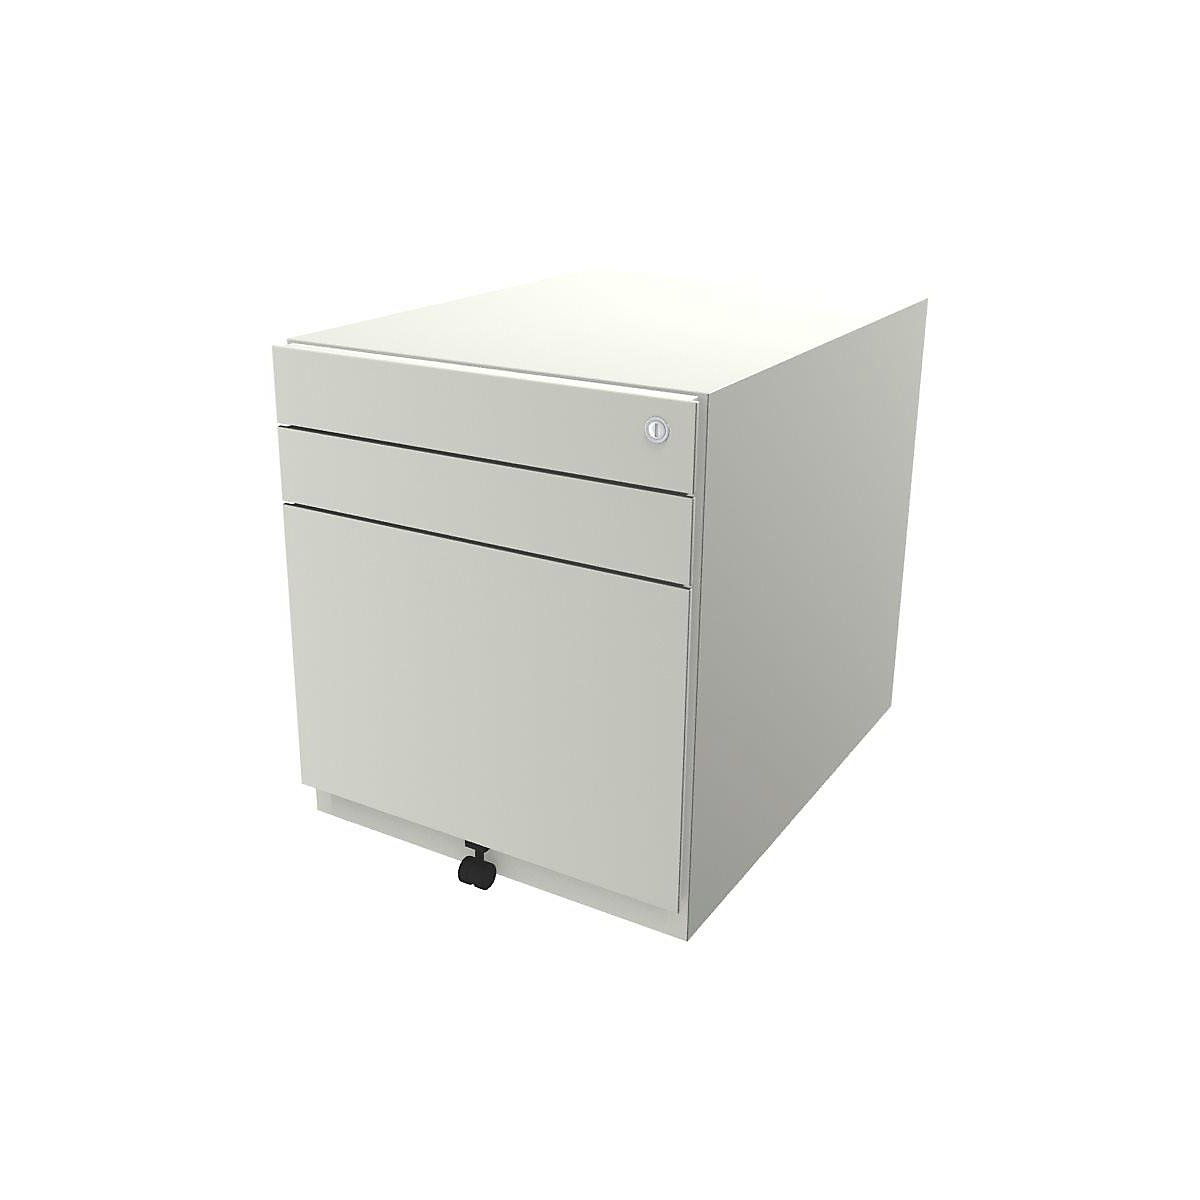 Pojazdný kontajner Note™, s 2 univerzálnymi zásuvkami, 1 závesná registratúra – BISLEY